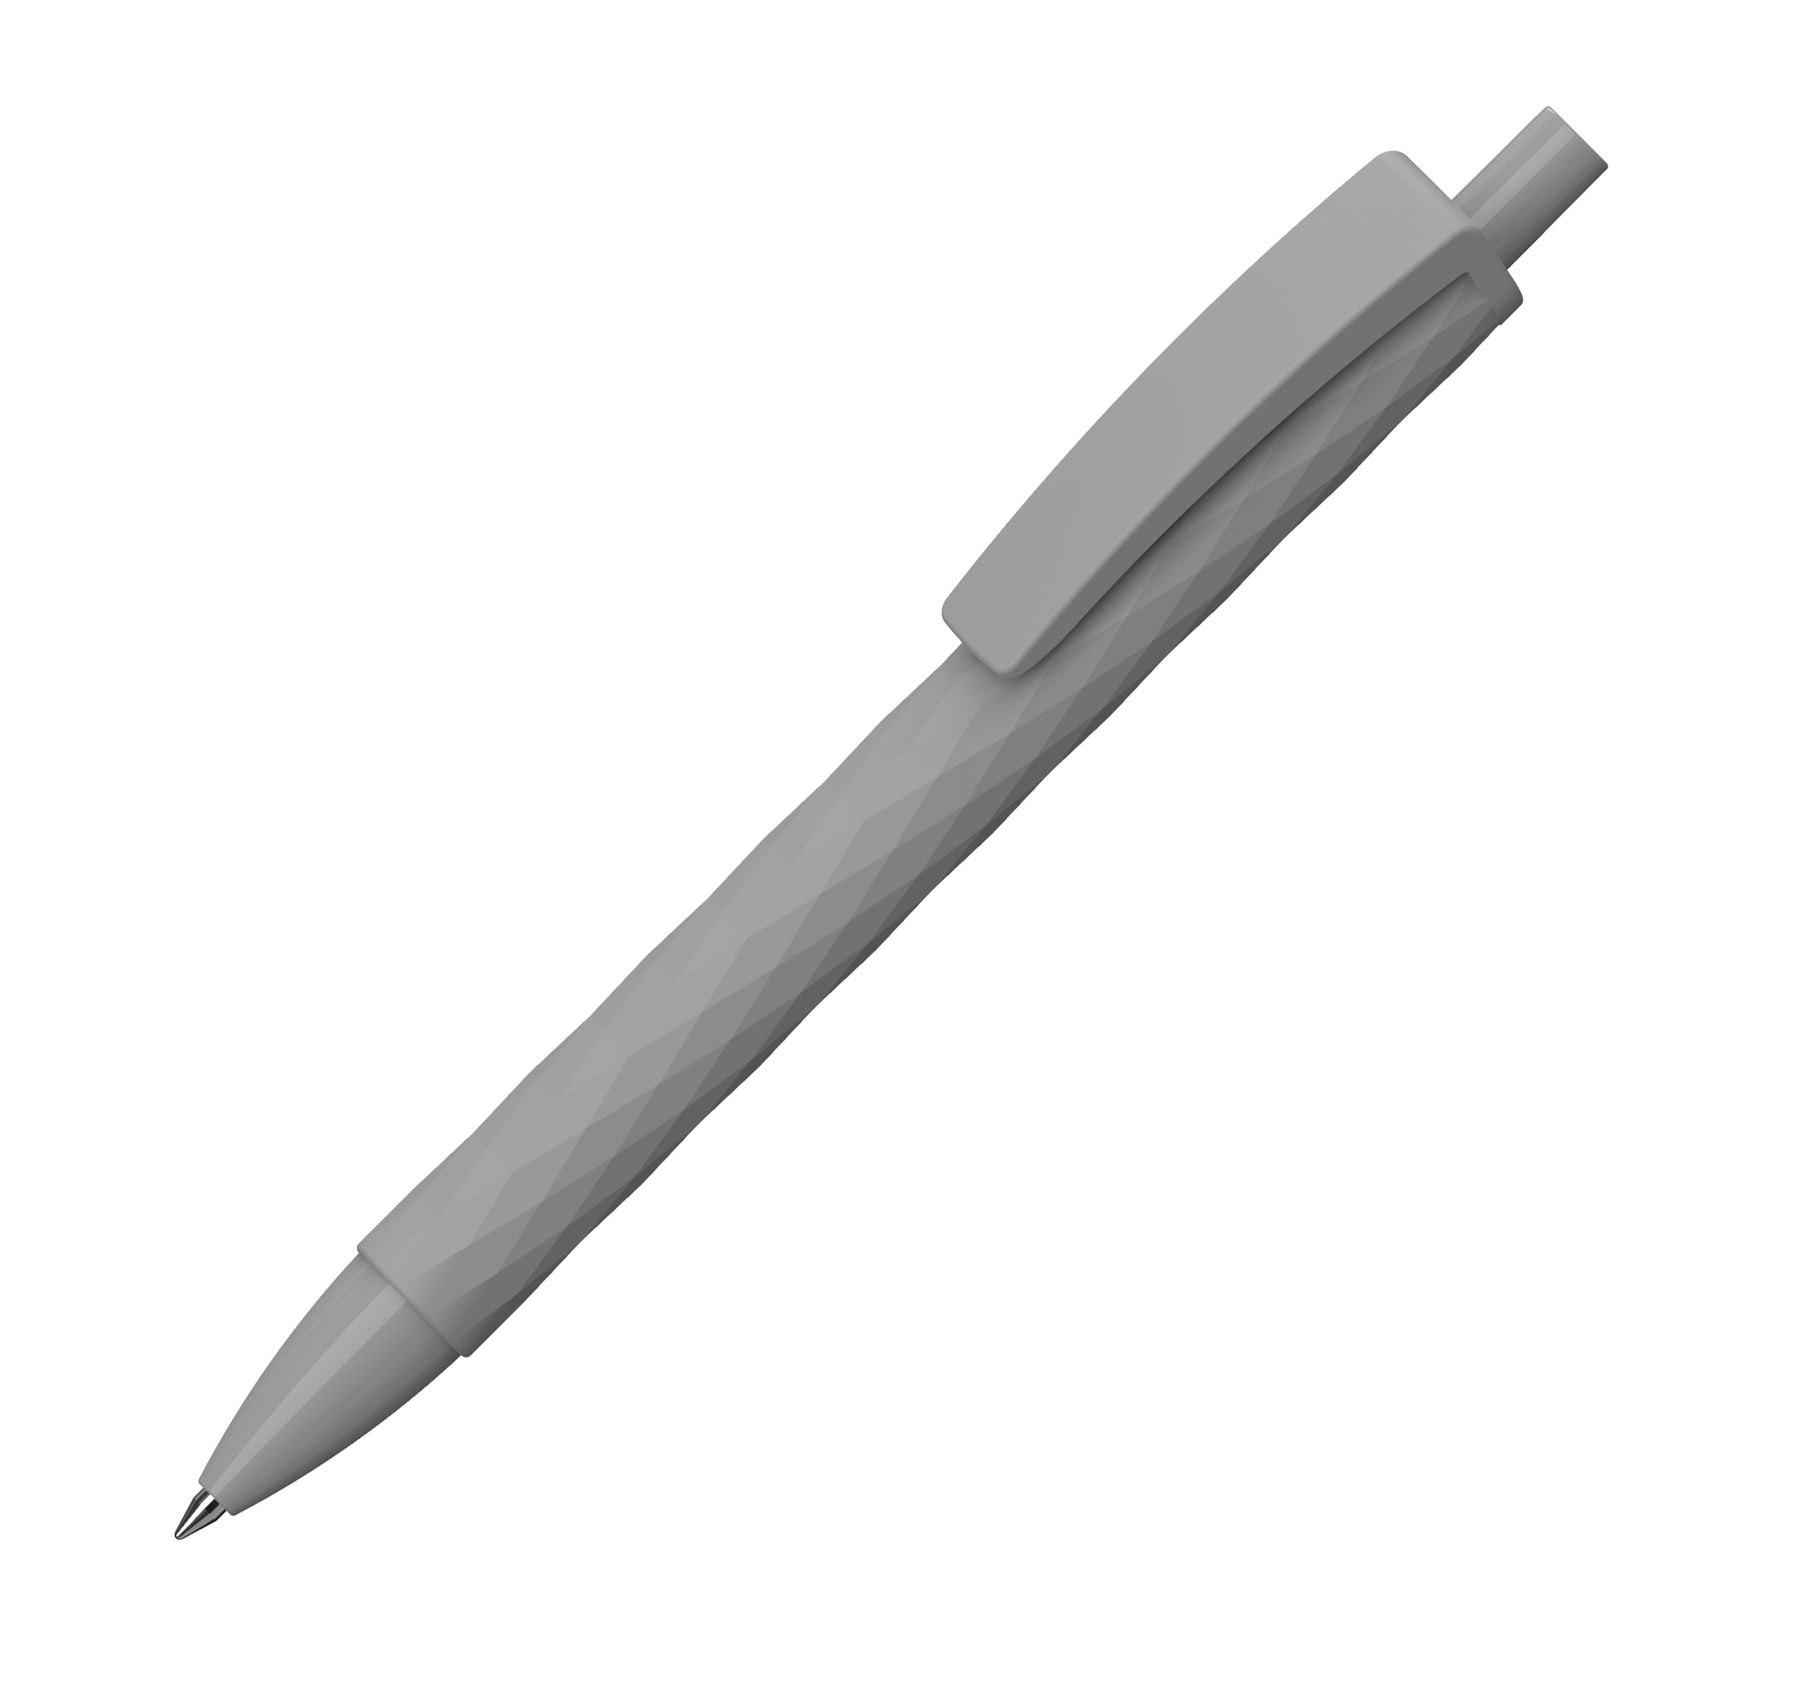 Ston ballpoint pen